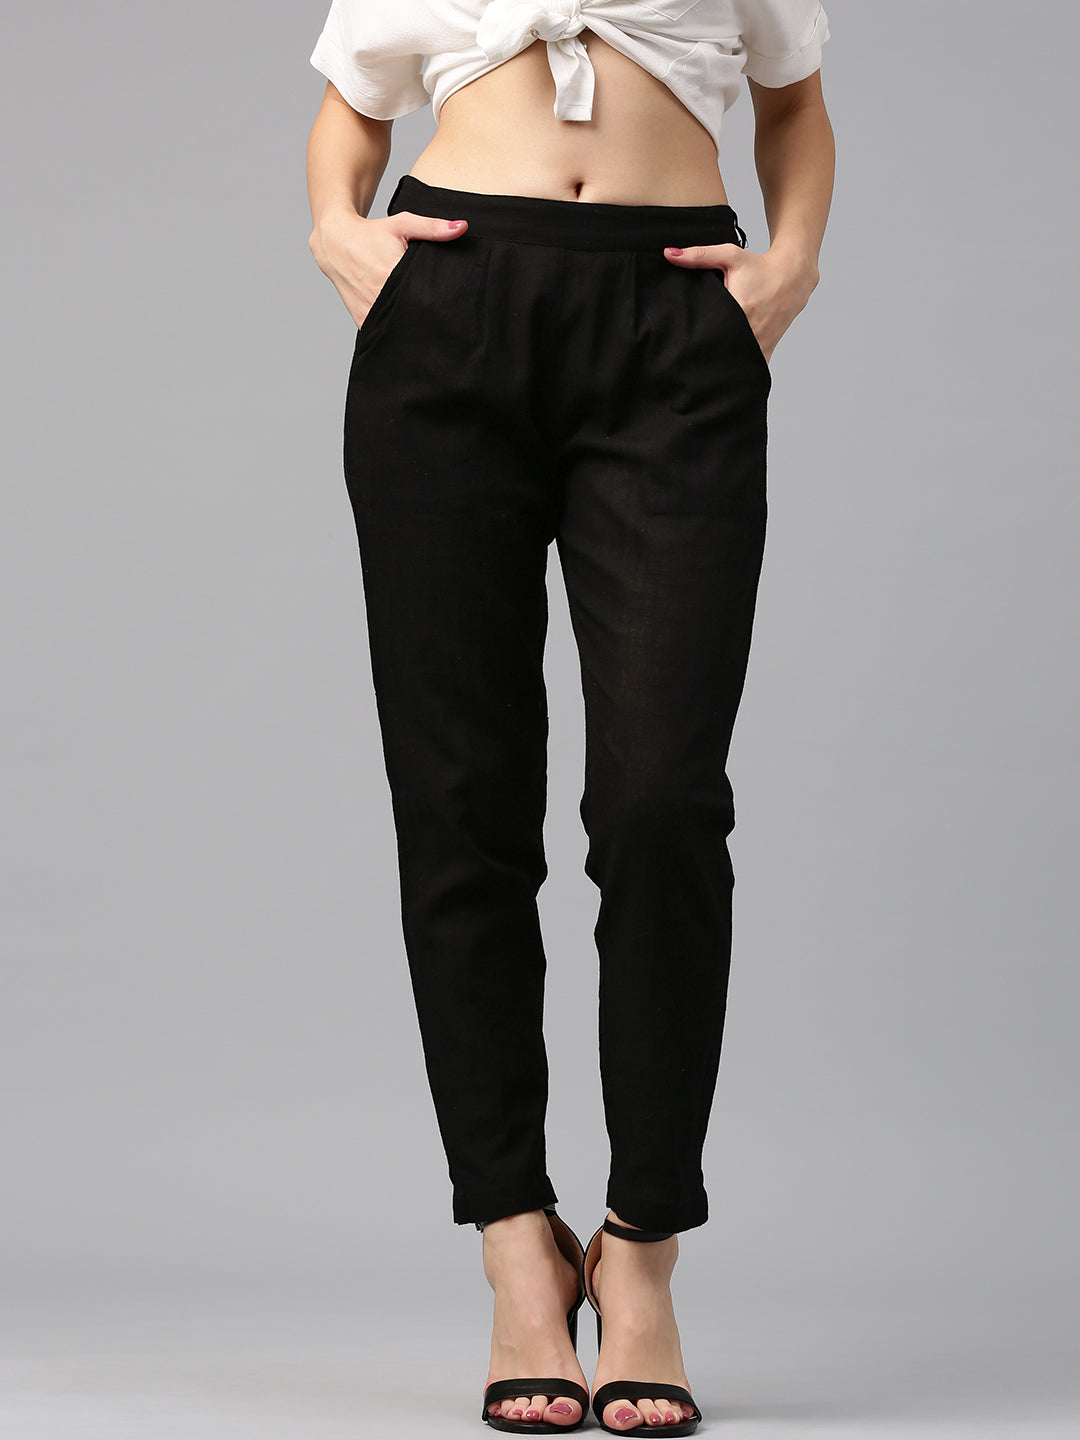 2020 New Style Trouser Design New Pintex Trouser Design Trouser And Capri  Design | Womens pants design, Trouser designs, Pants women fashion